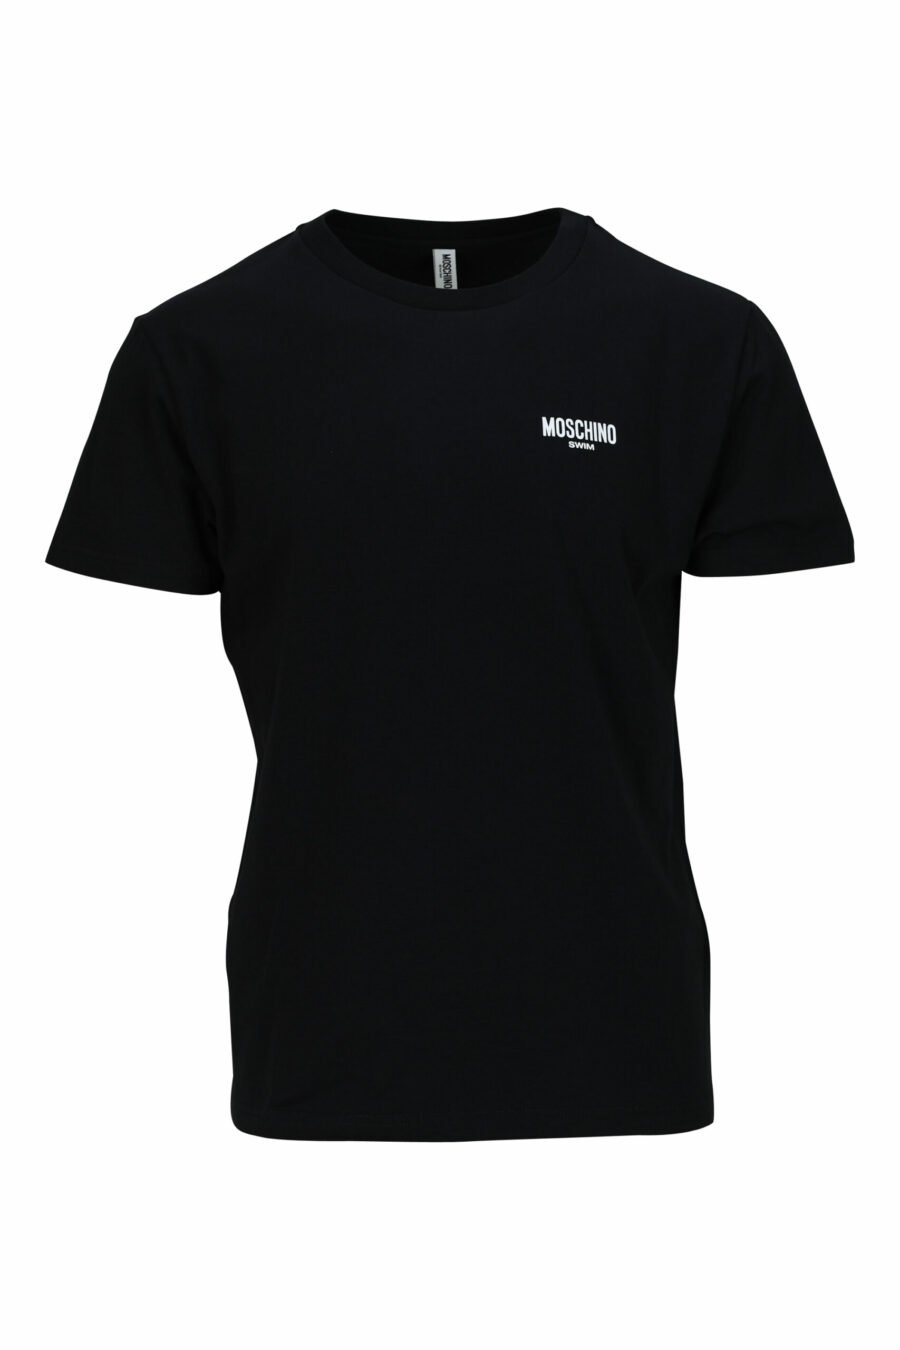 Schwarzes T-Shirt mit Minilogue "swim" - 667113673530 skaliert